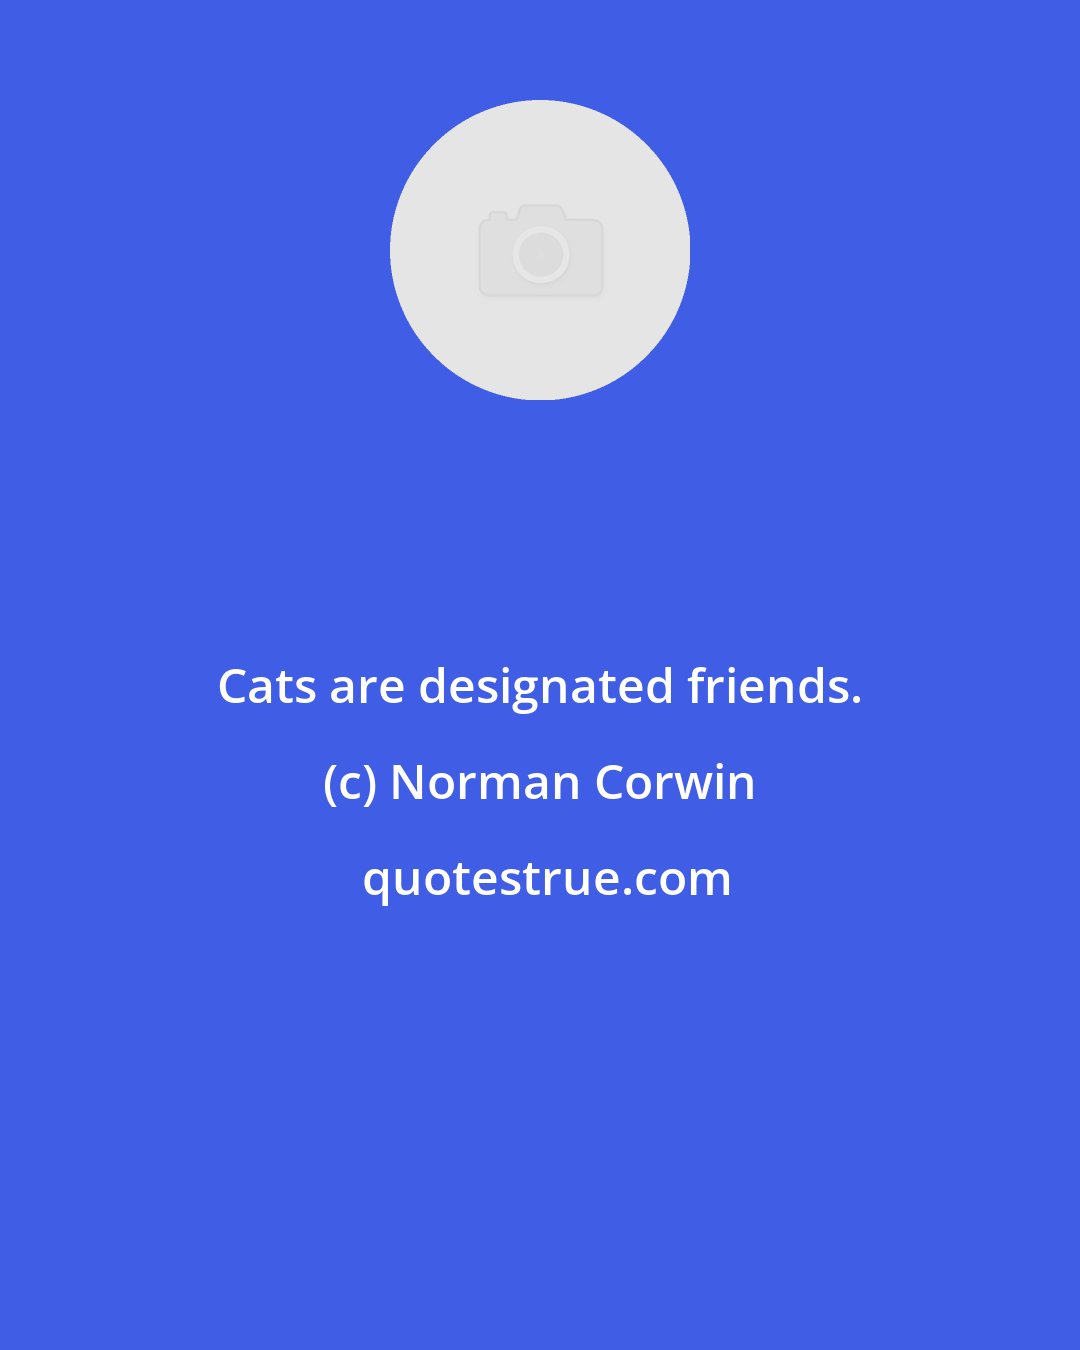 Norman Corwin: Cats are designated friends.